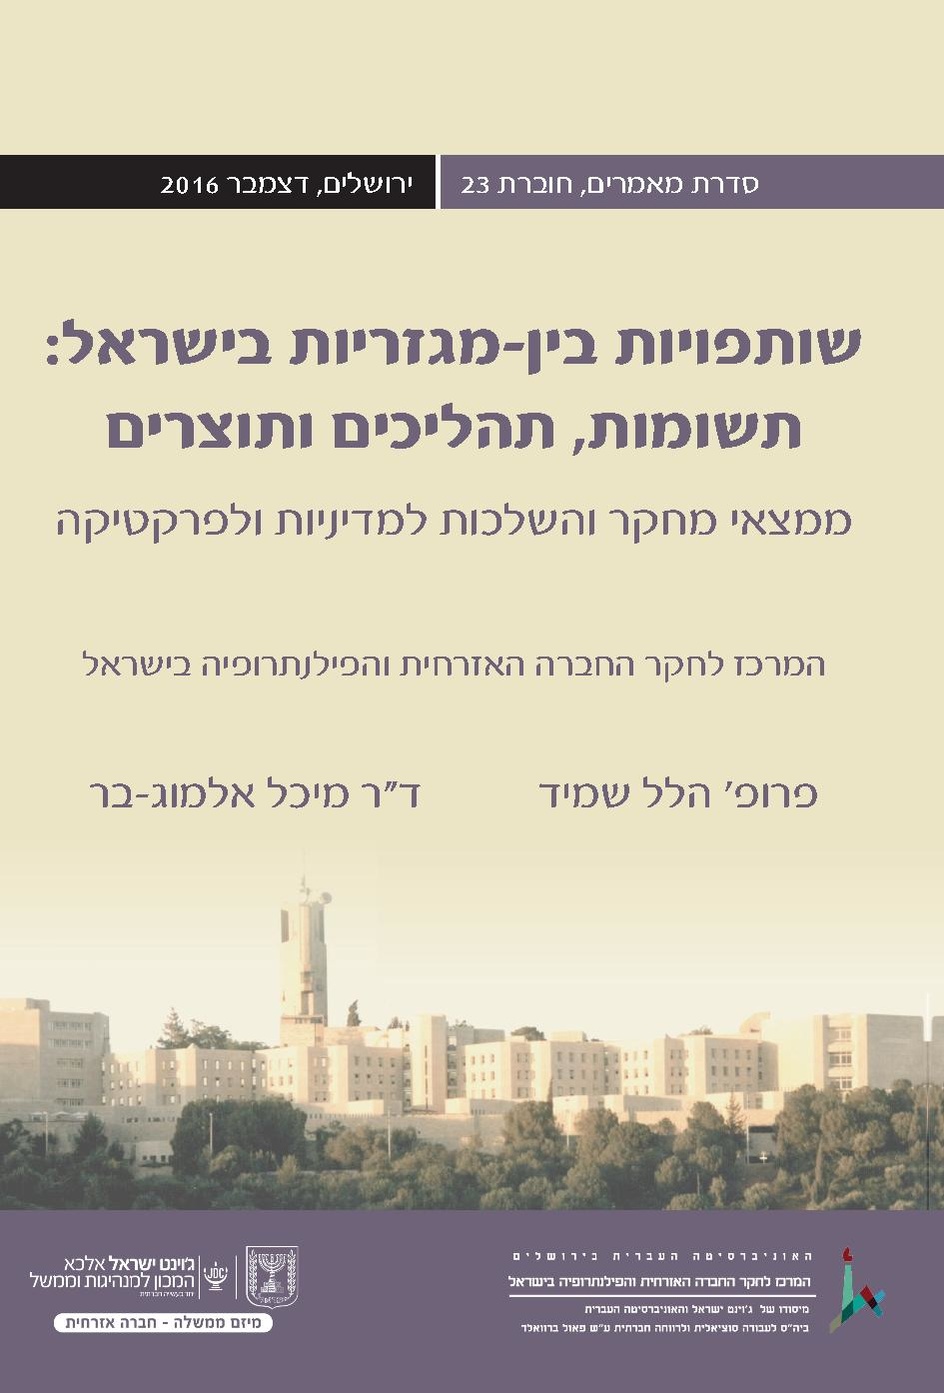 שותפויות בין-מגזריות בישראל- מחקר האונ העברית.pdf